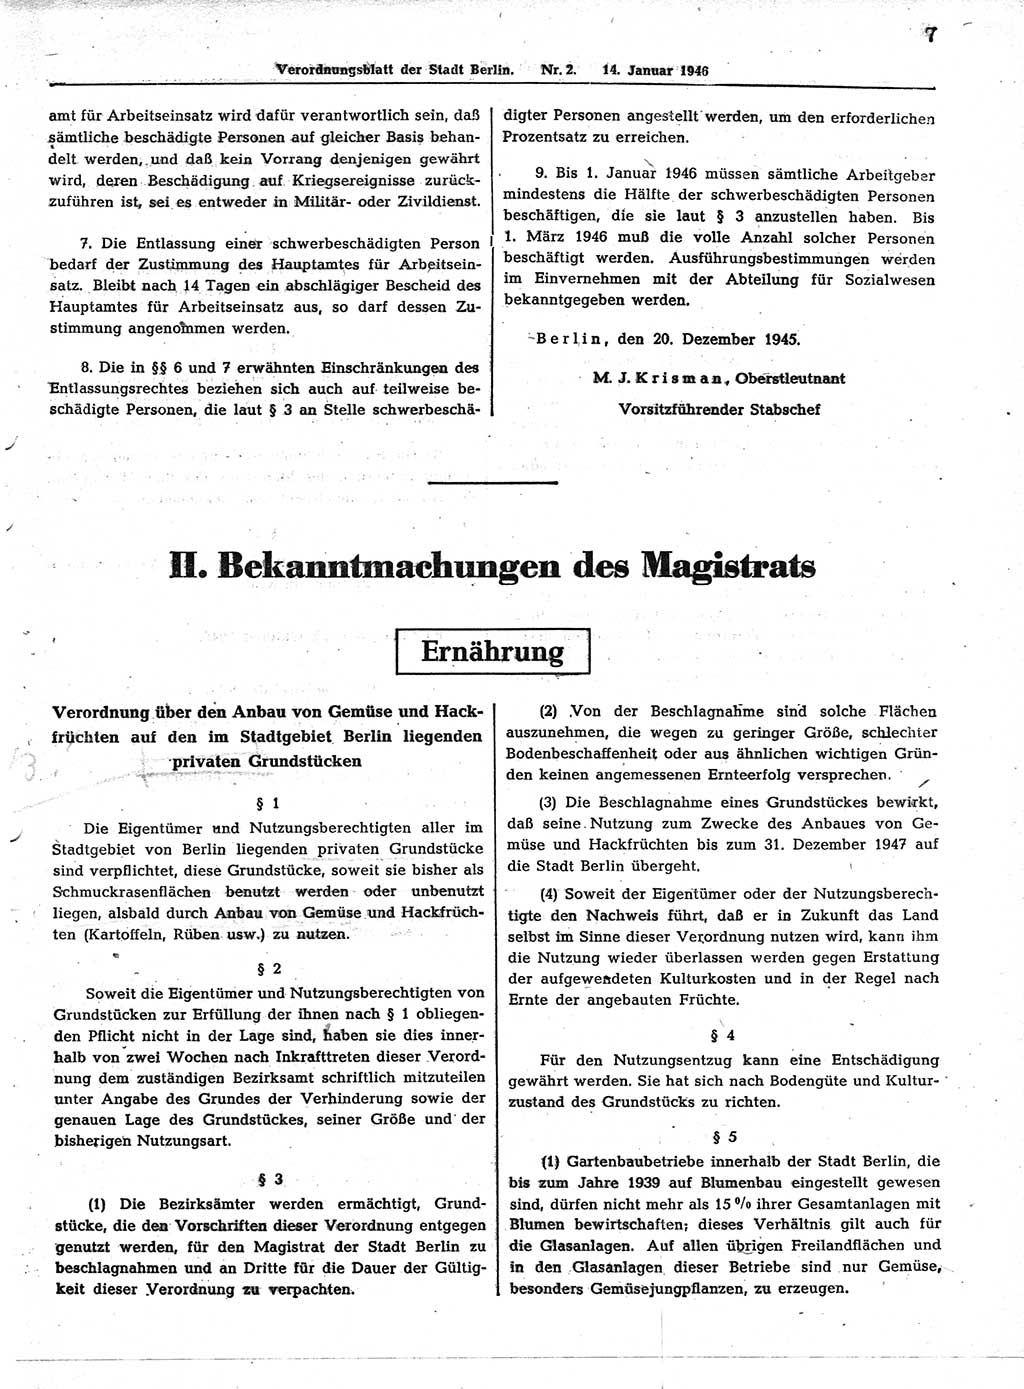 Verordnungsblatt (VOBl.) der Stadt Berlin, für Groß-Berlin 1946, Seite 7 (VOBl. Bln. 1946, S. 7)